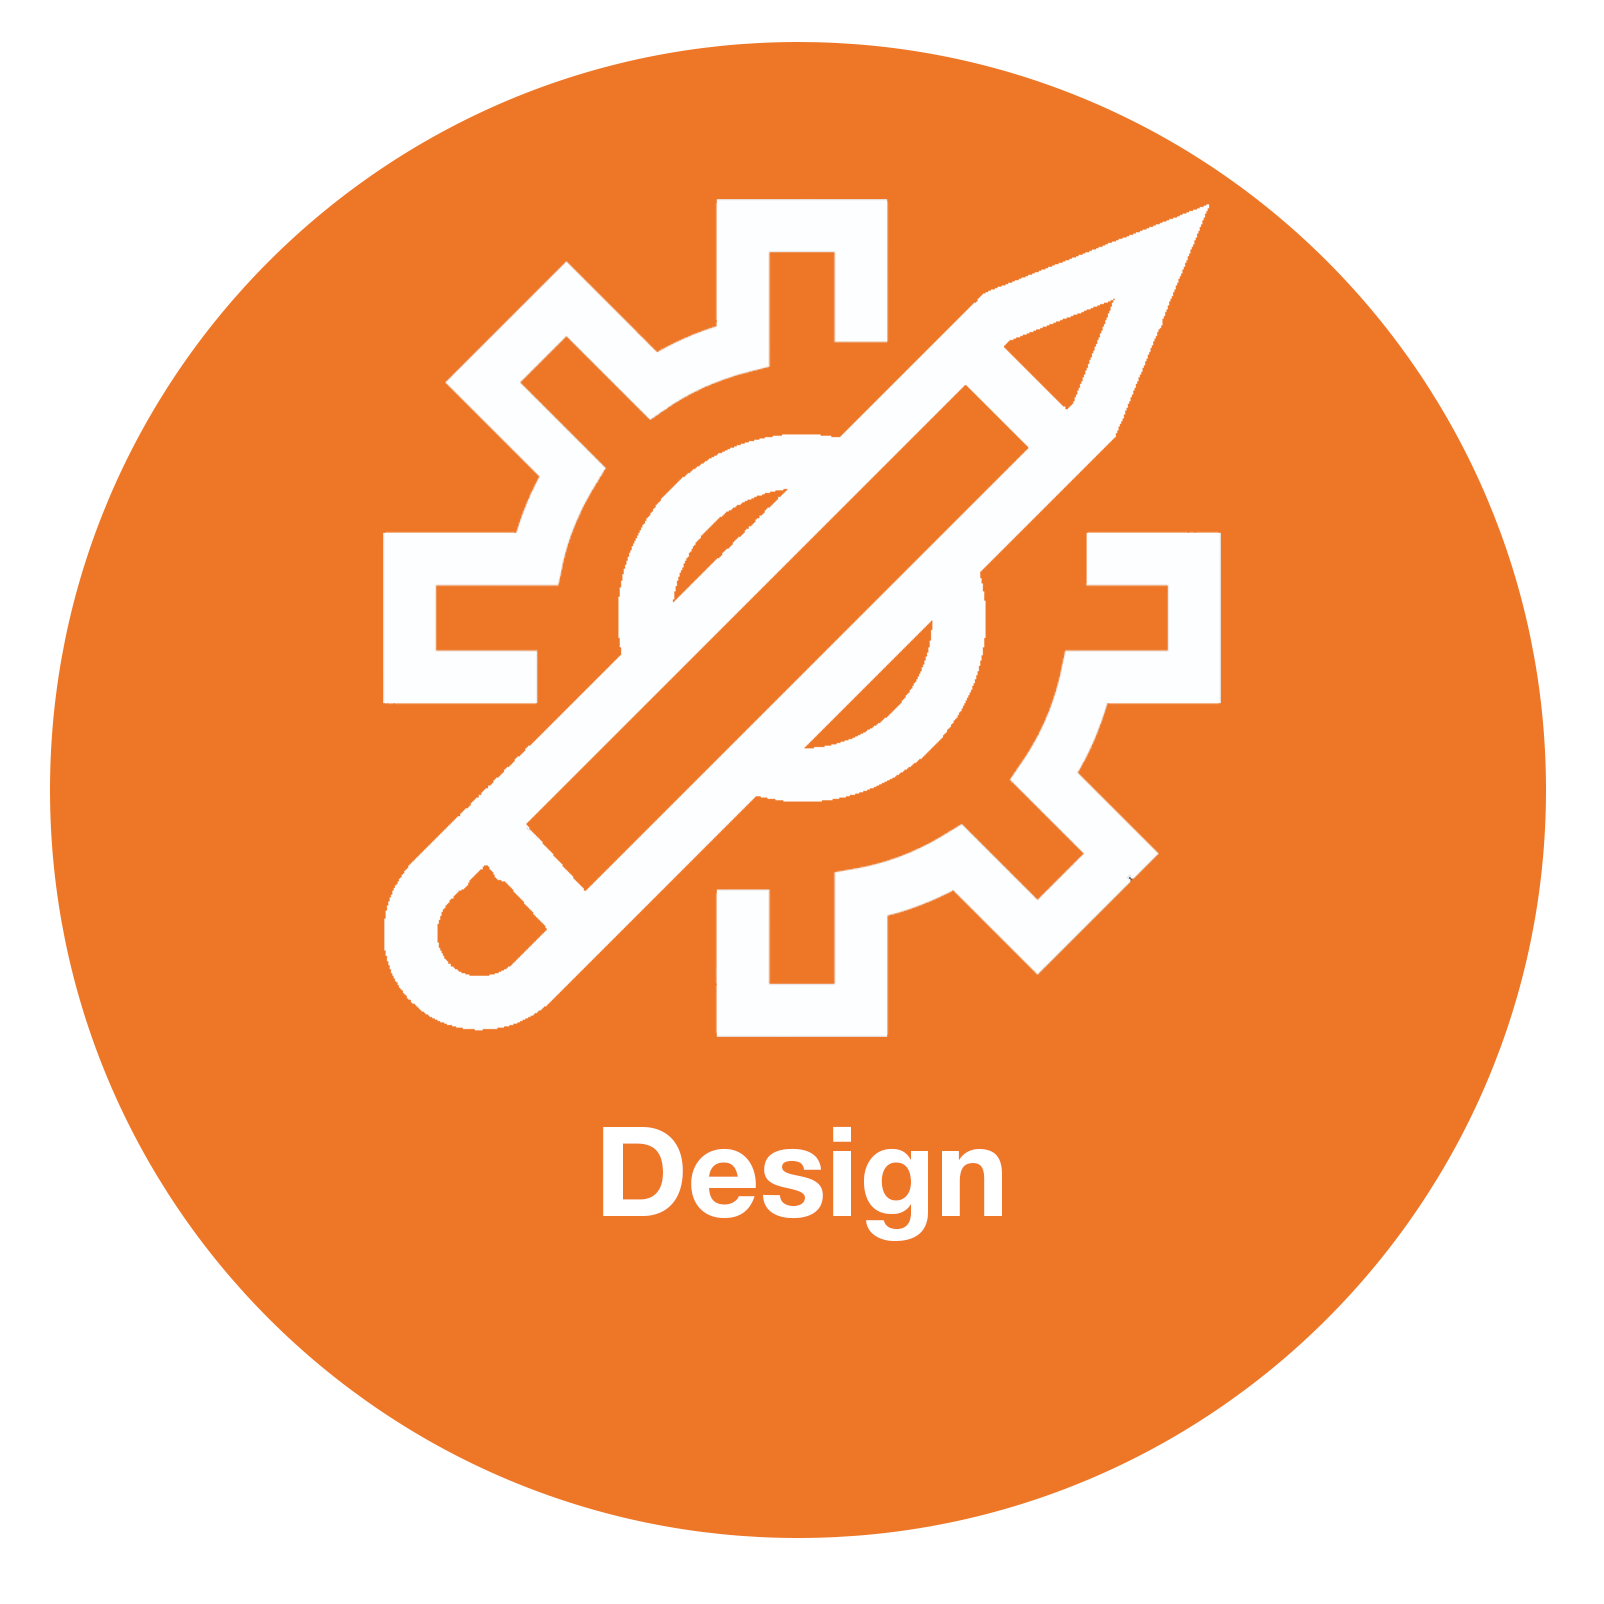 Design Department Icons